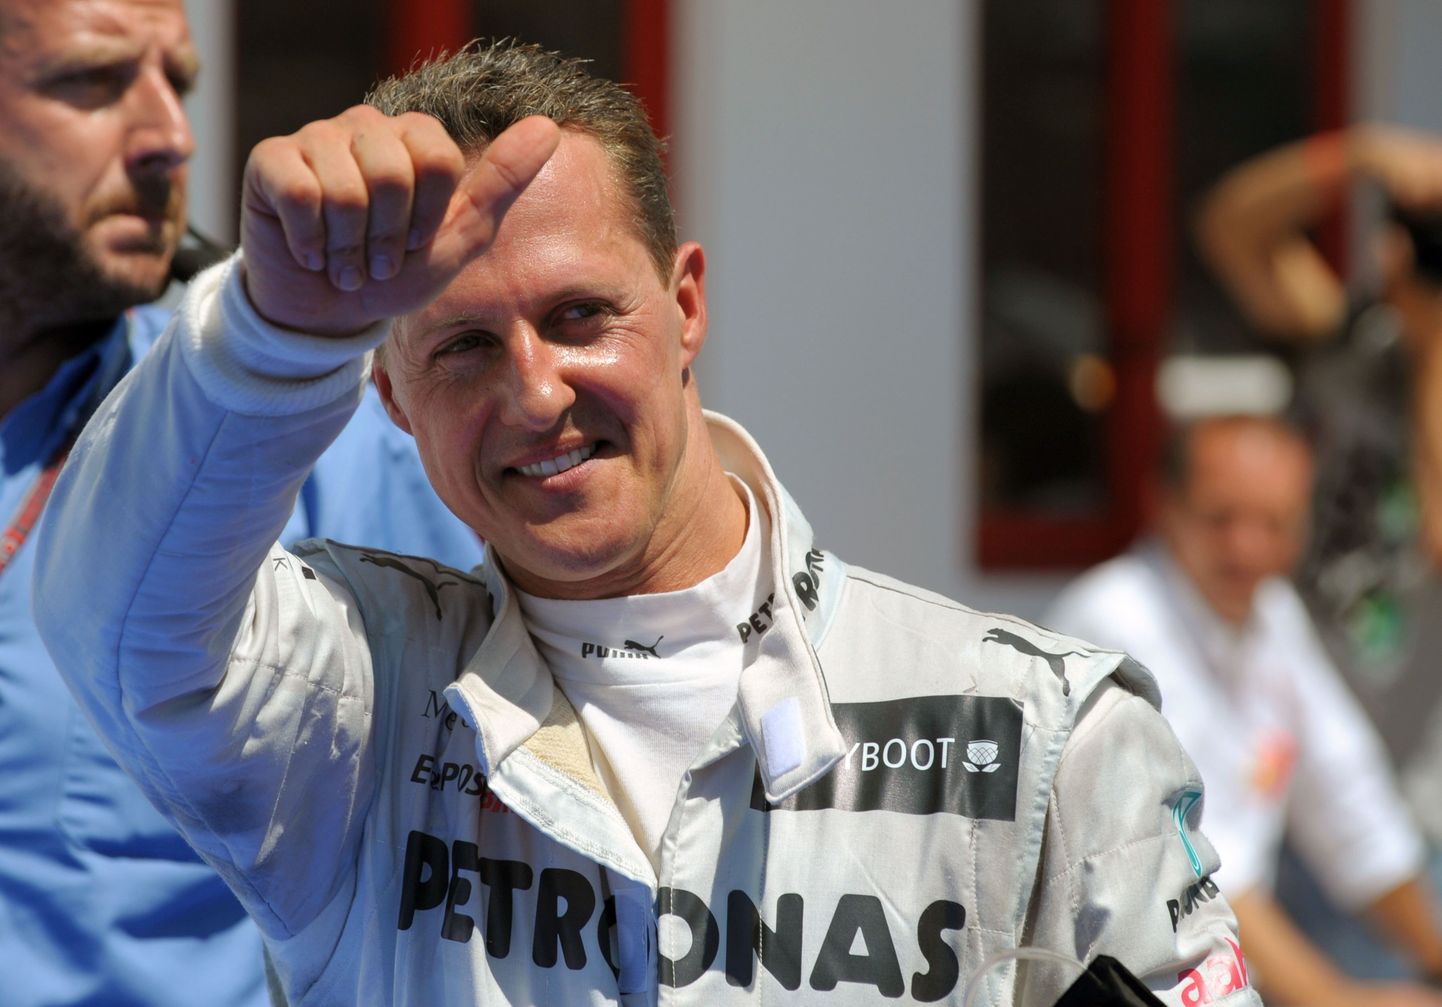 Pühapäeval toimunud vormel-1 Euroopa GP-l jõudsid poodiumile kolm sarja üldvõitjaks tulnud pilooti: võitis Fernando Alonso, teiseks tuli Kimi Räikkönen ja kolmanda koha saavutas Michael Schumacher.